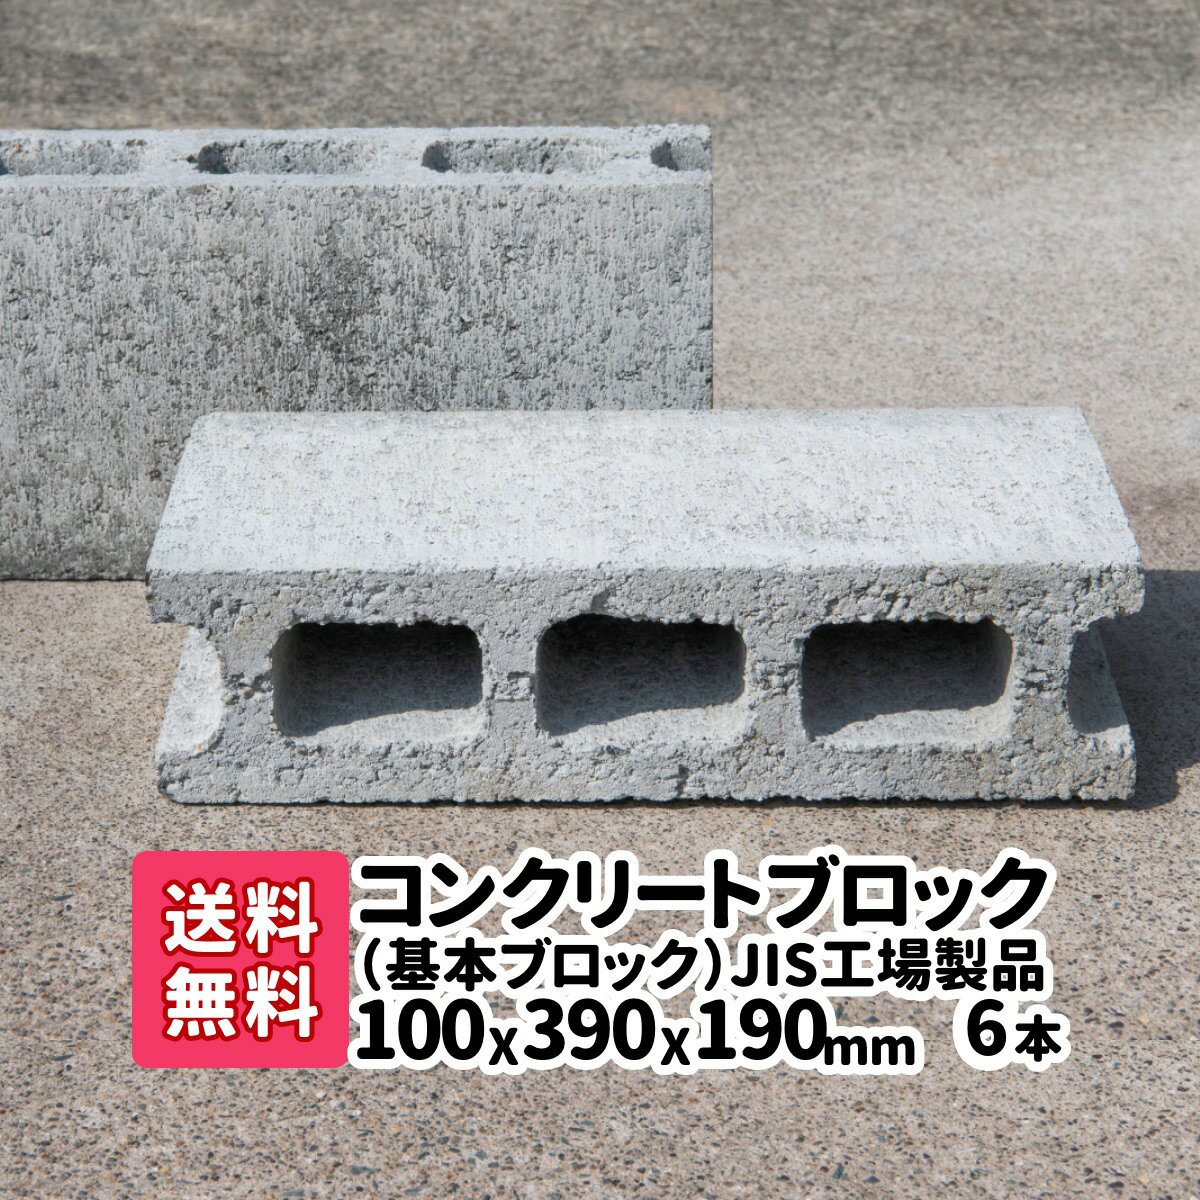 【送料無料】6本(2本×3)JIS工場製品コンクリートブロック 基本 厚み100mm×横390mm×縦190mm 基礎 台 ブロック塀 ブロック エアコン台 物置の基礎